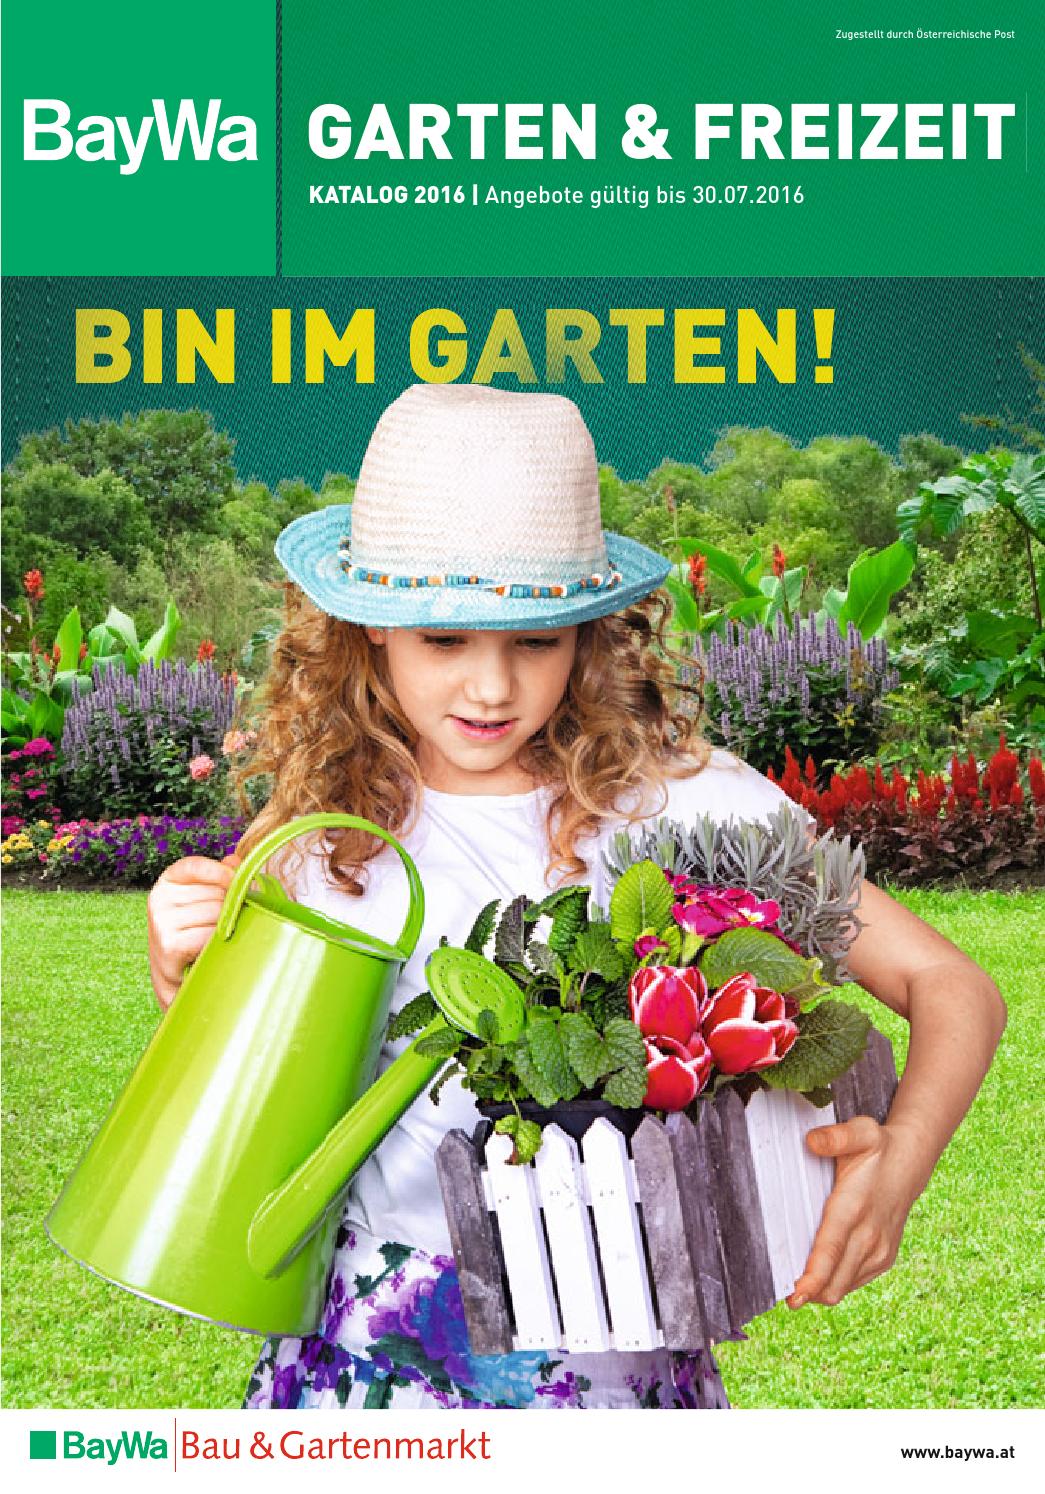 Regenwasserspeicher Garten Schön Baywa Kw11 by Russmedia Digital Gmbh issuu